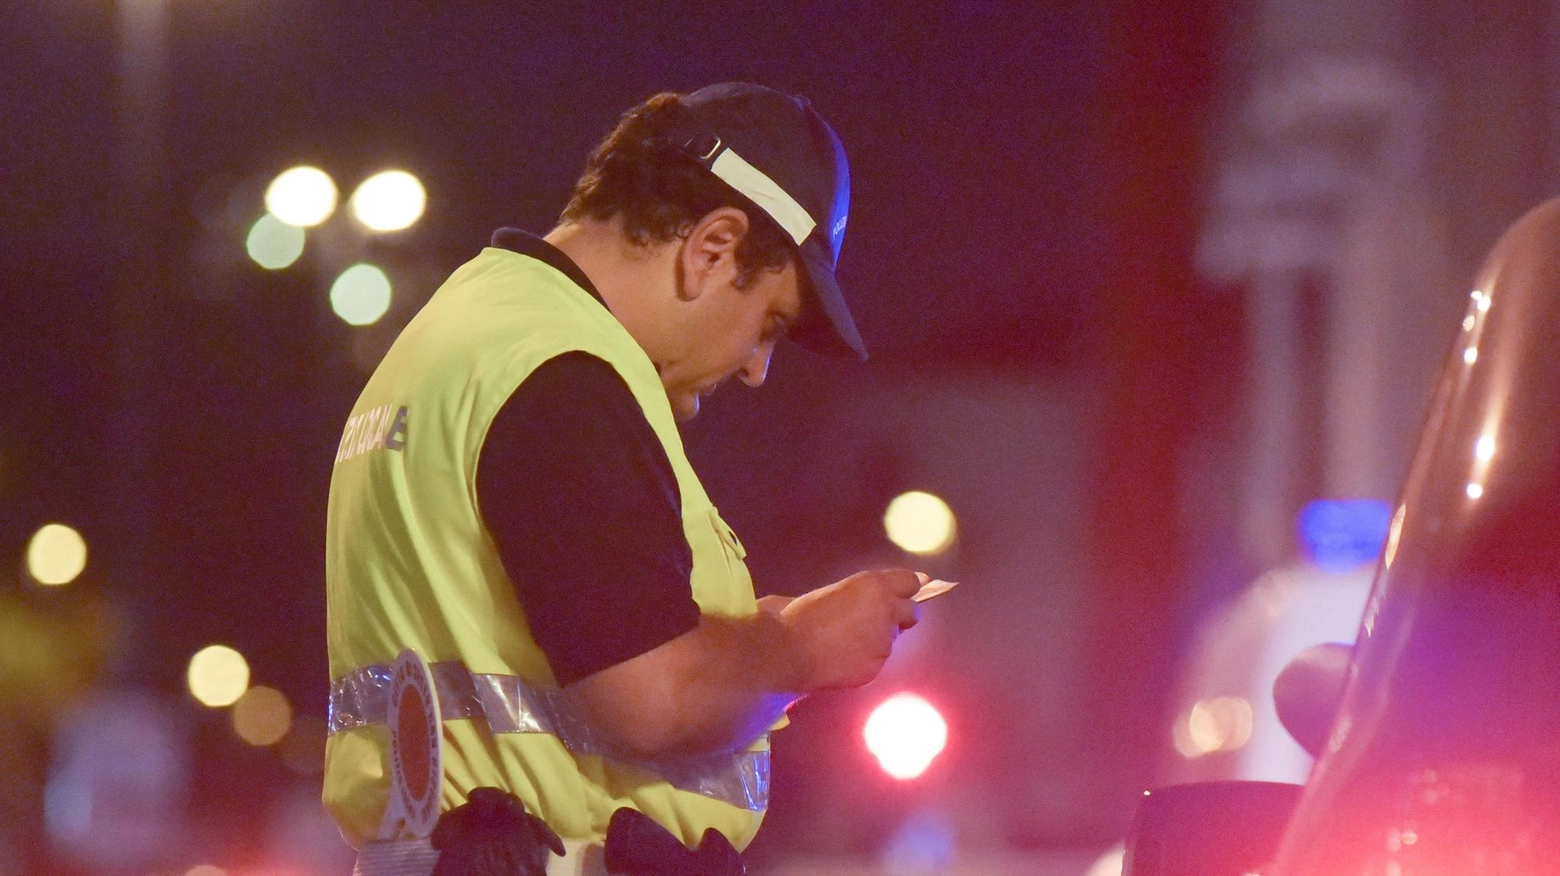 Gli agenti della polizia locale di Bresso hanno controllato 71 autoveicoli, verbalizzando 12 infrazioni al Codice della Strada e ritirando una patente di guida. Un automobilista è risultato positivo all'alcol test. Lode alla comandante e ai suoi uomini per il lavoro svolto.